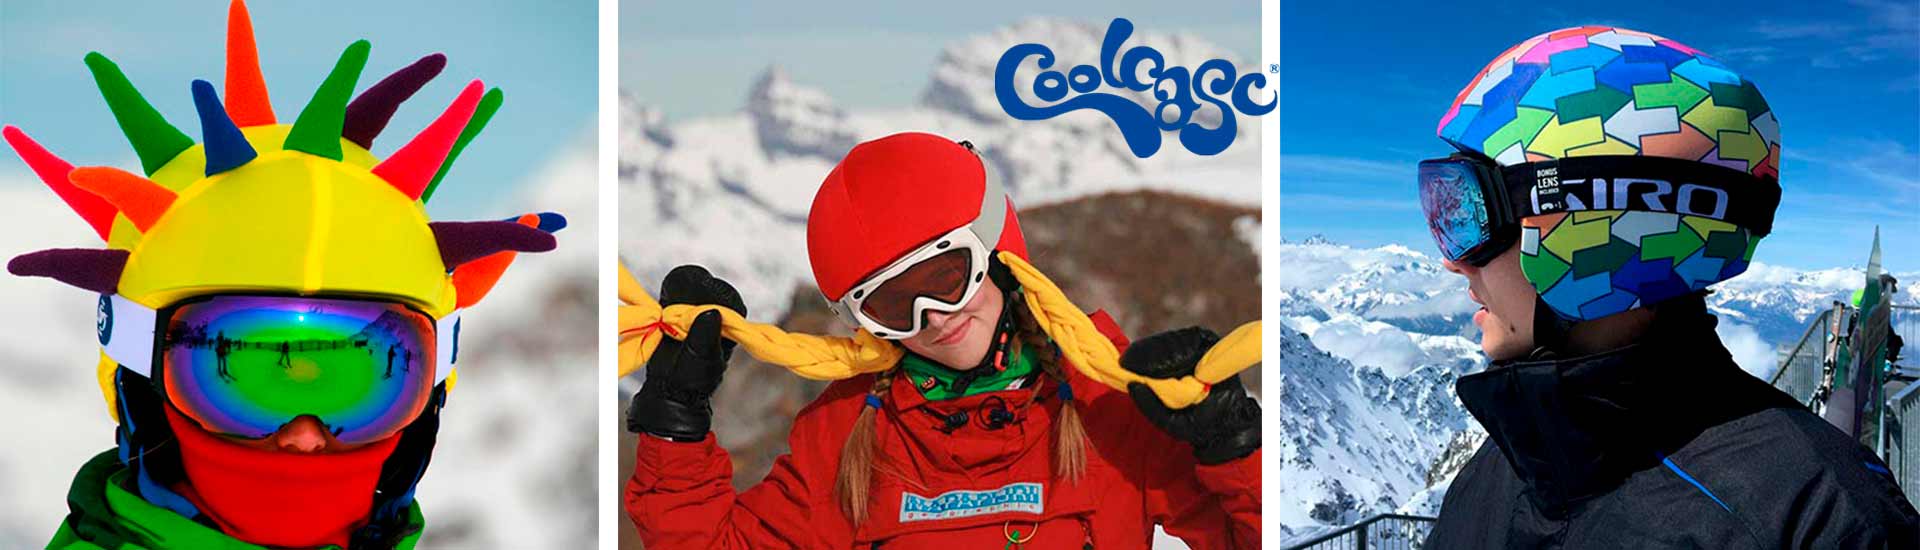 CoolCasc, Fundas para cascos de esquí